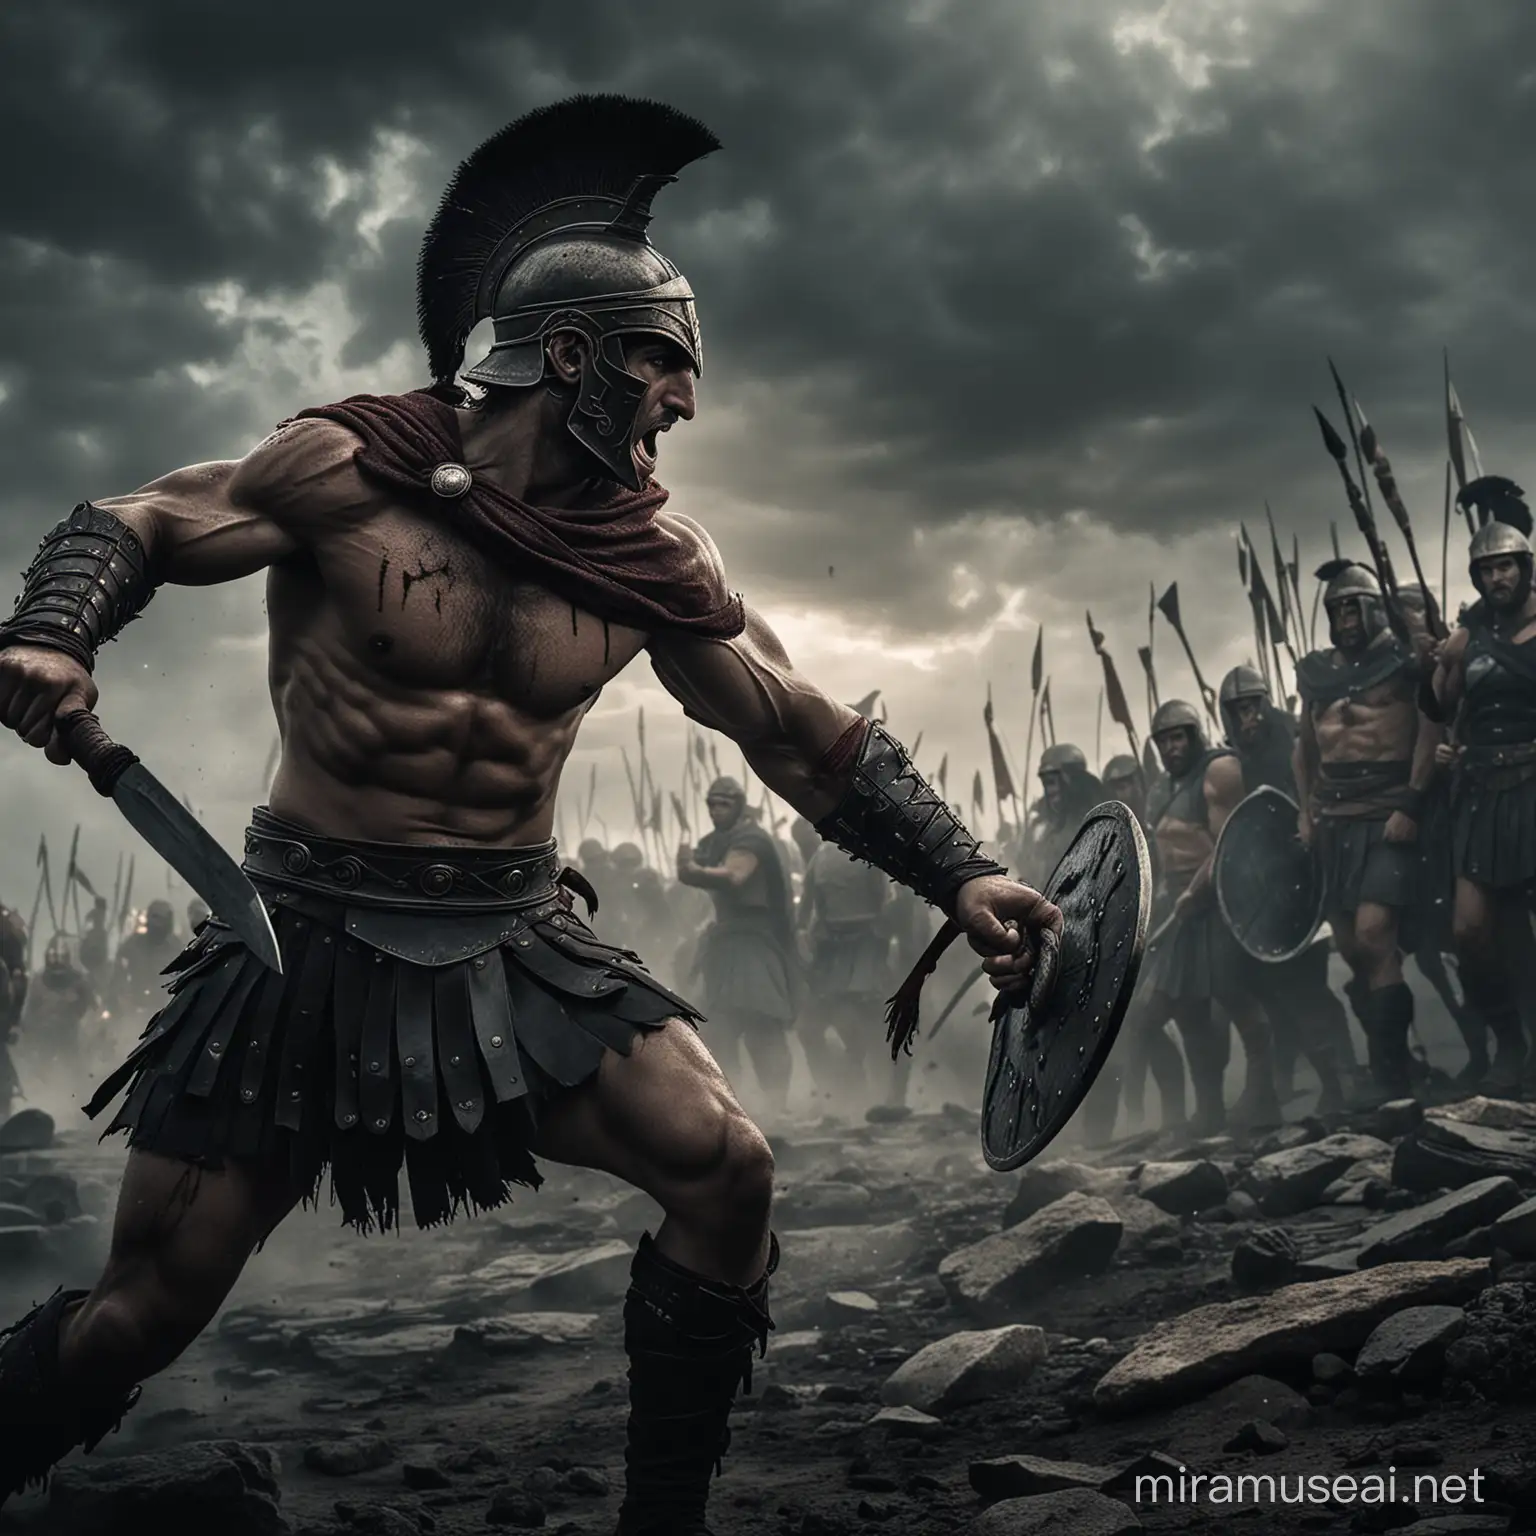 صورة سينمائية غامضة مظلمة رهيبة عن رجل محارب يوناني قوي وهو يقاتل في معرمة شرسة متغلبا عليهم